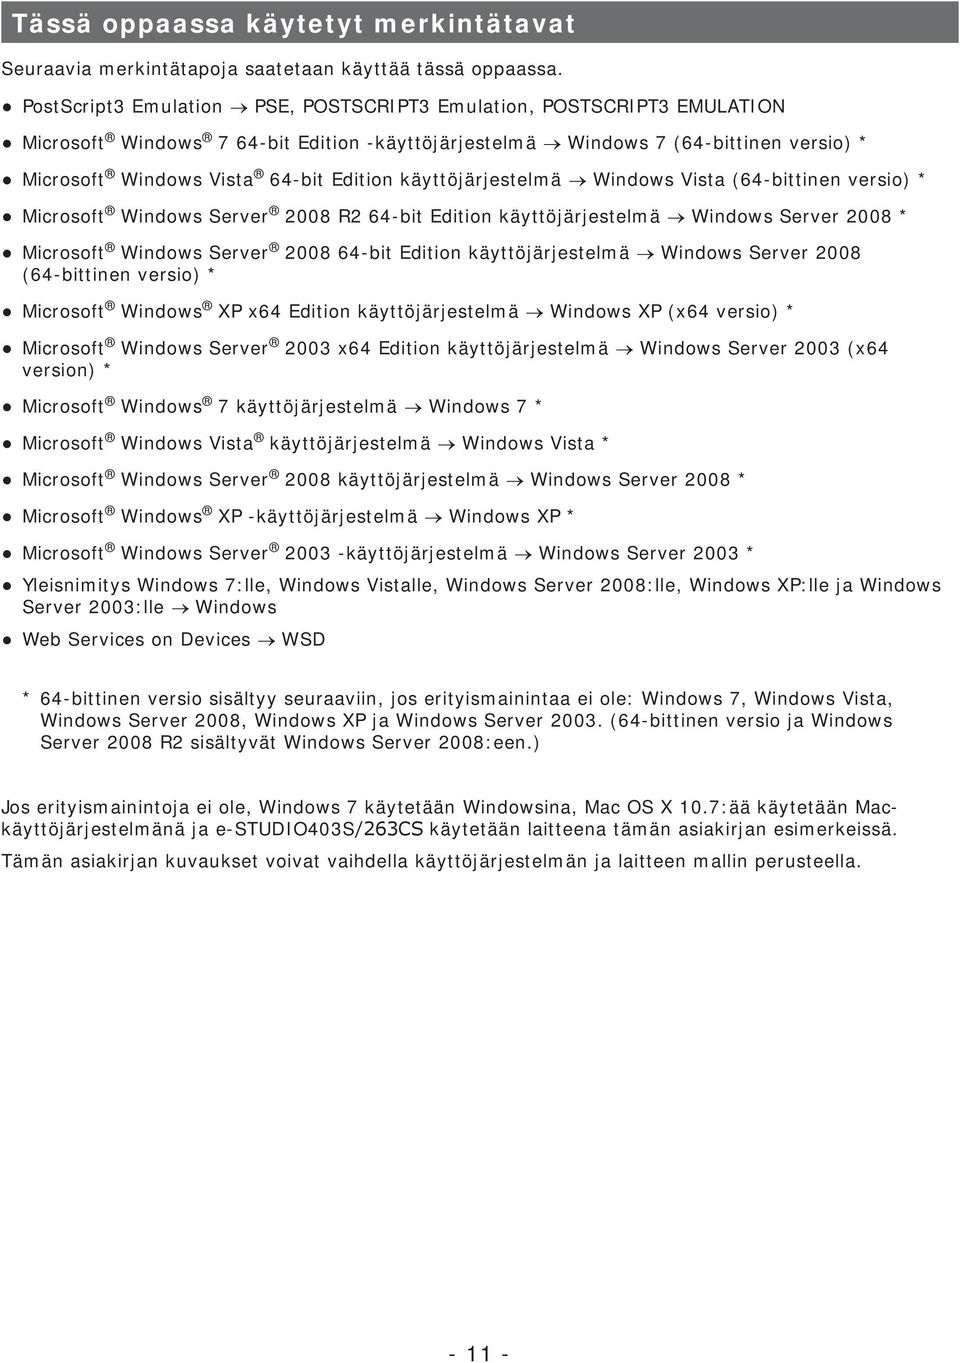 käyttöjärjestelmä Windows Vista (64-bittinen versio) * Microsoft Windows Server 2008 R2 64-bit Edition käyttöjärjestelmä Windows Server 2008 * Microsoft Windows Server 2008 64-bit Edition